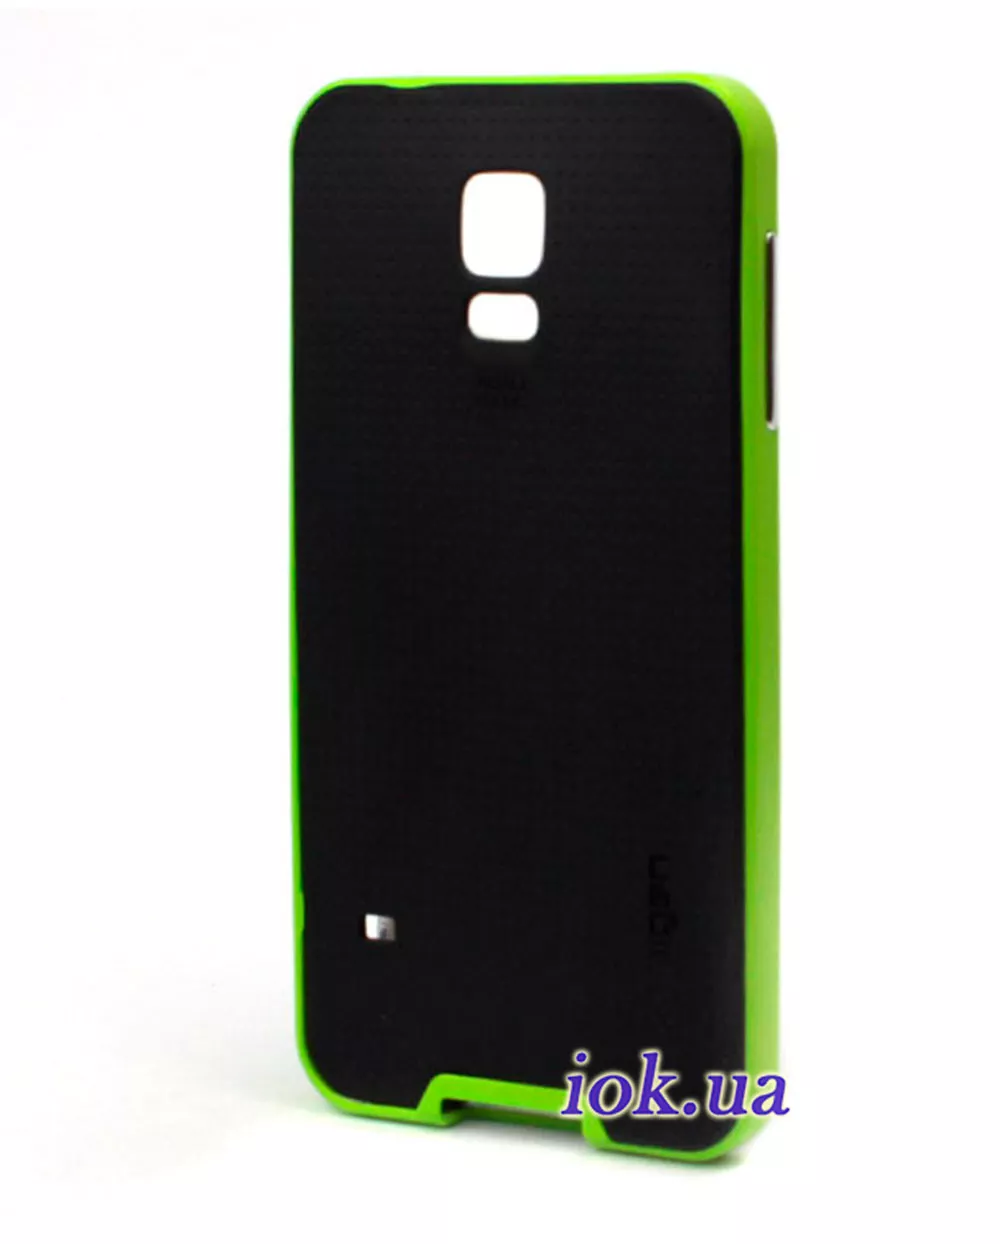 Чехол Spigen Neo Hybrid для Galaxy S5, зеленый